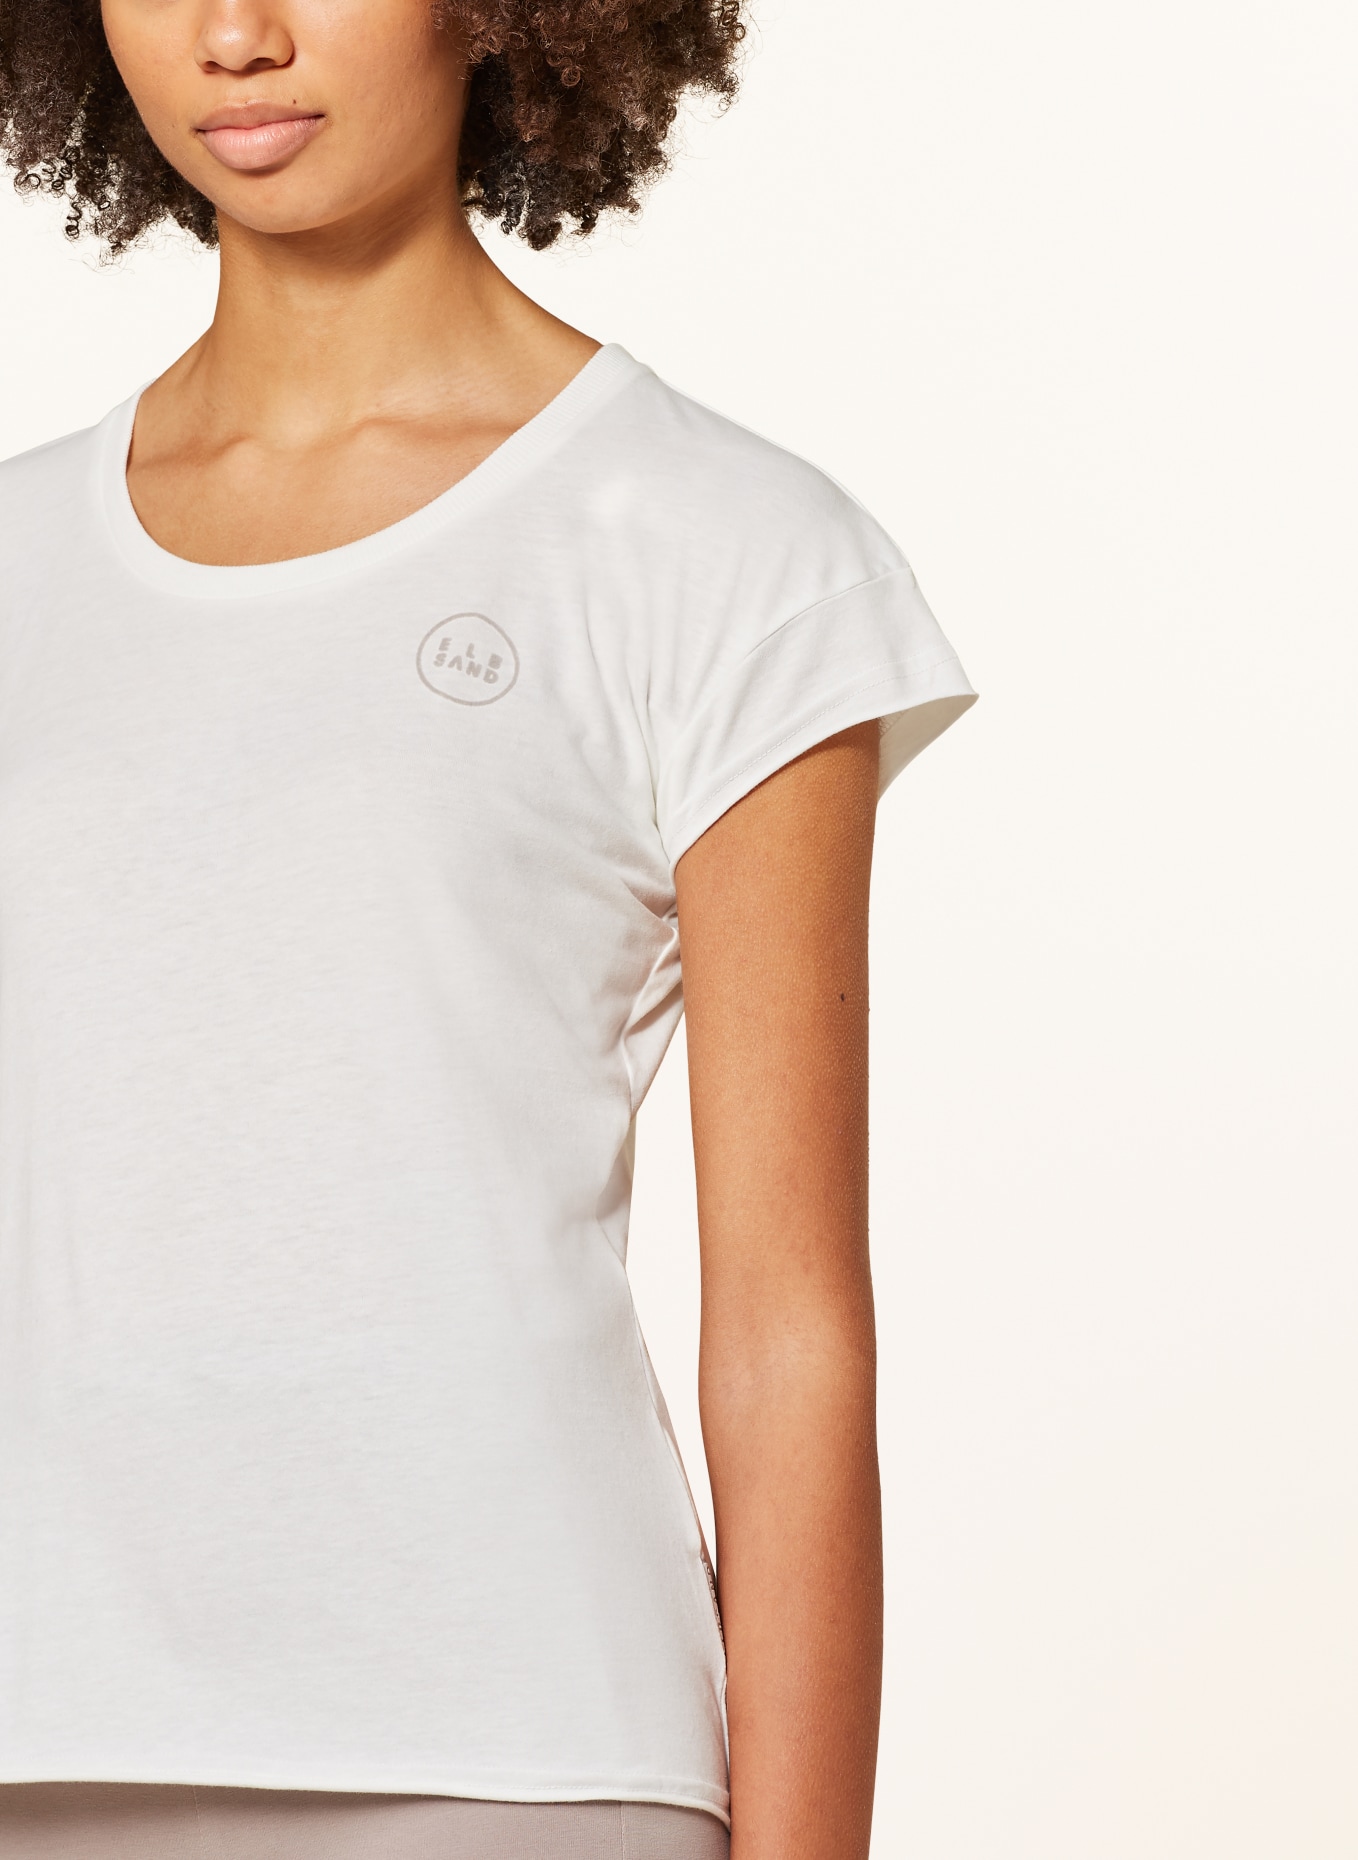 ELBSAND T-Shirt RAGNE, Farbe: WEISS (Bild 4)